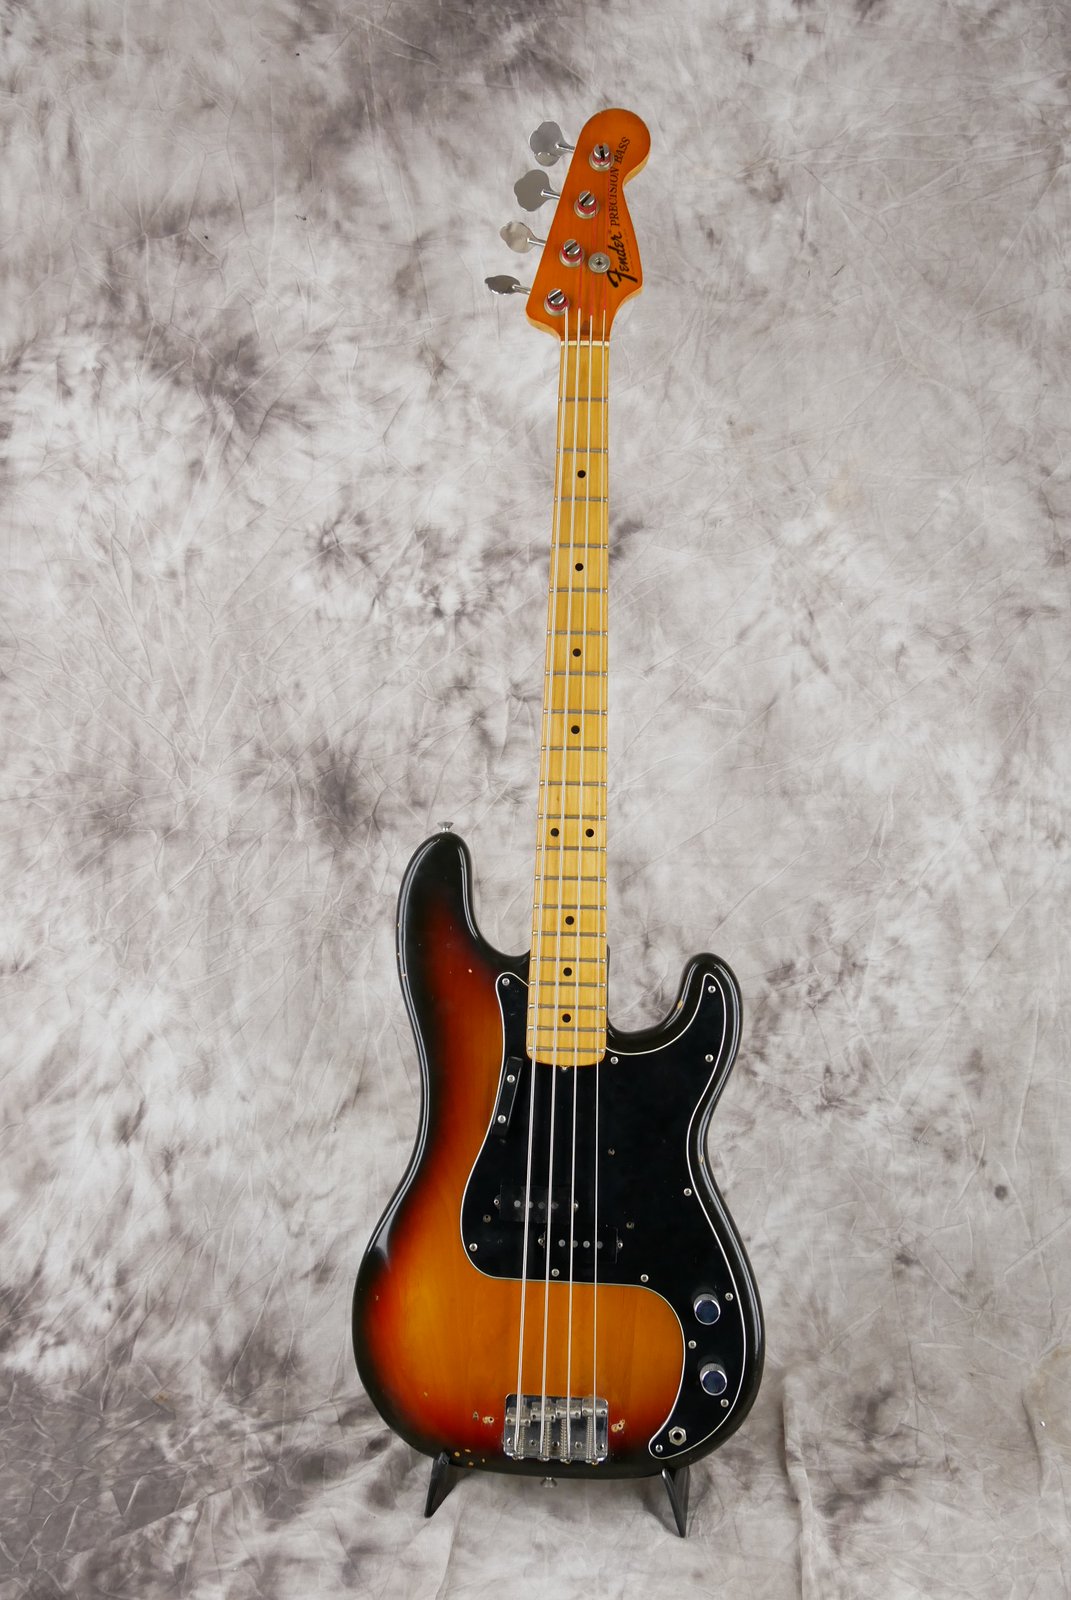 Fender-Precision-Bass-1974-sunburst-001.JPG